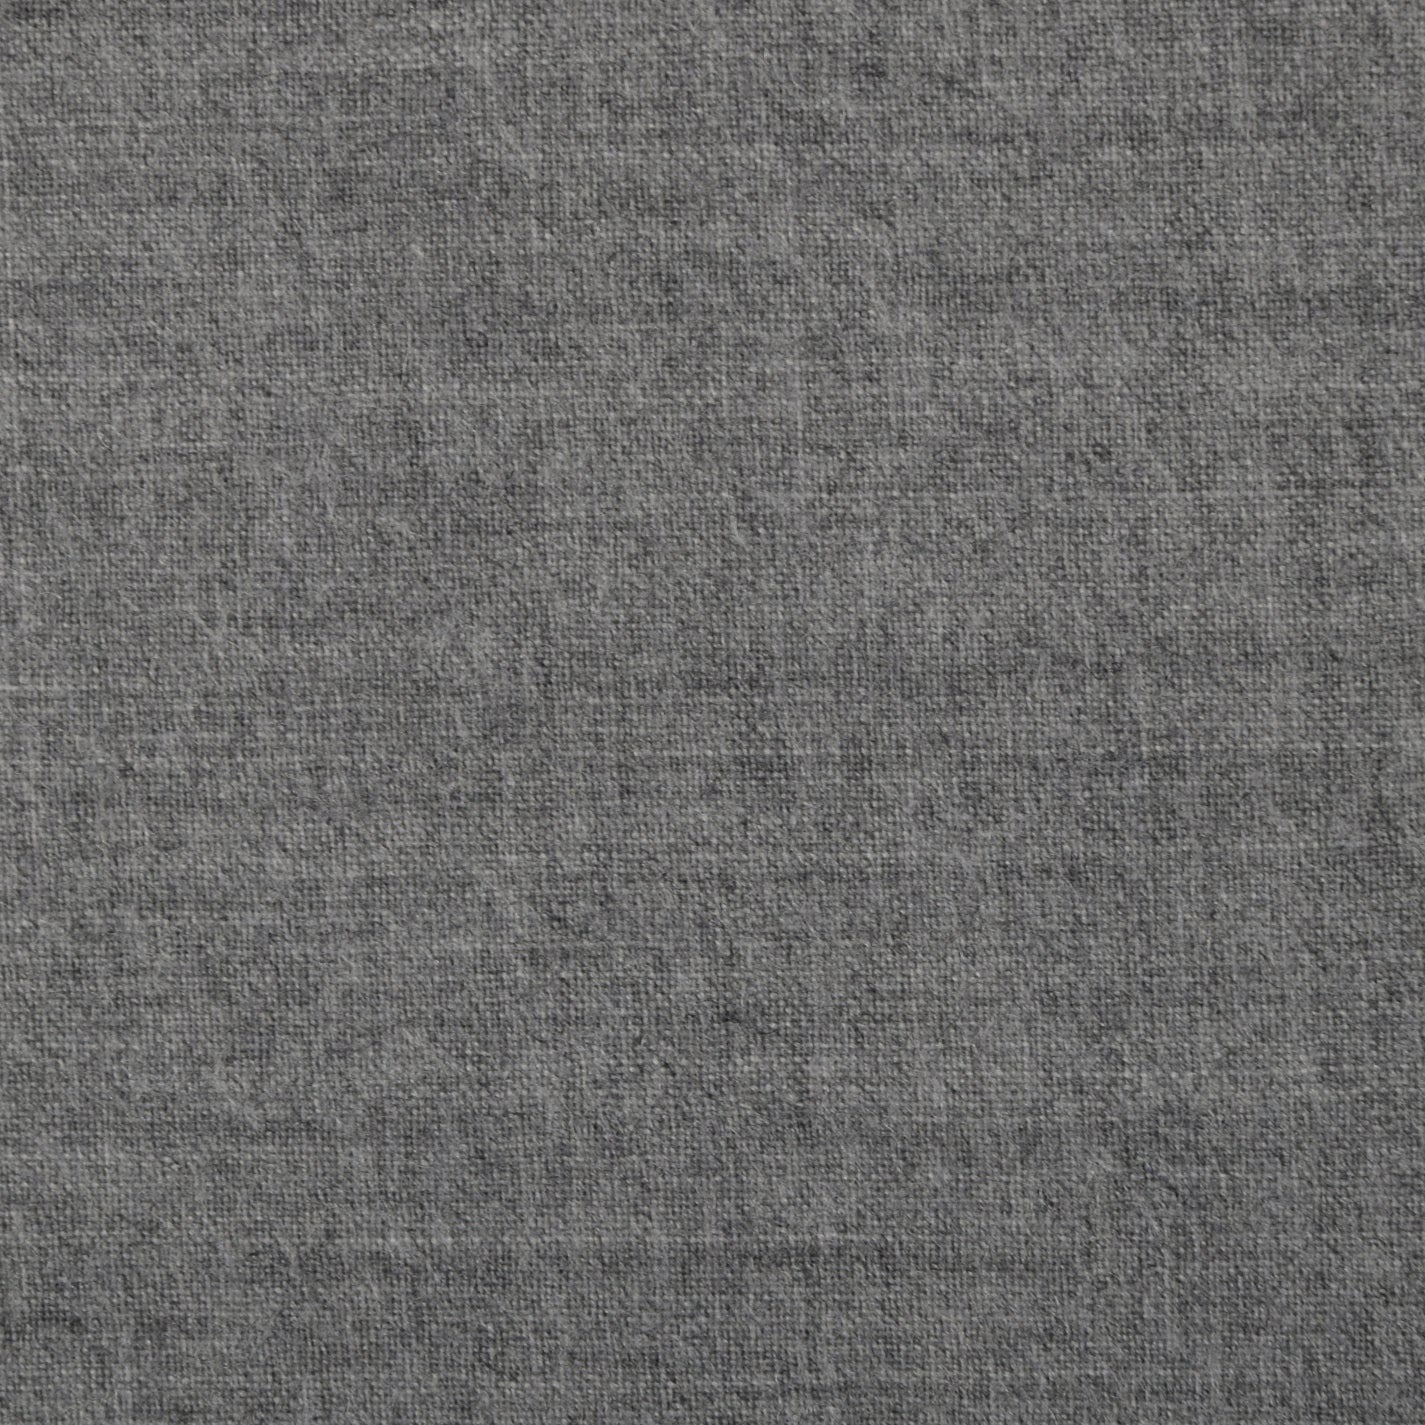 Stretch Suiting Grey Fabric 321 - Fabrics4Fashion